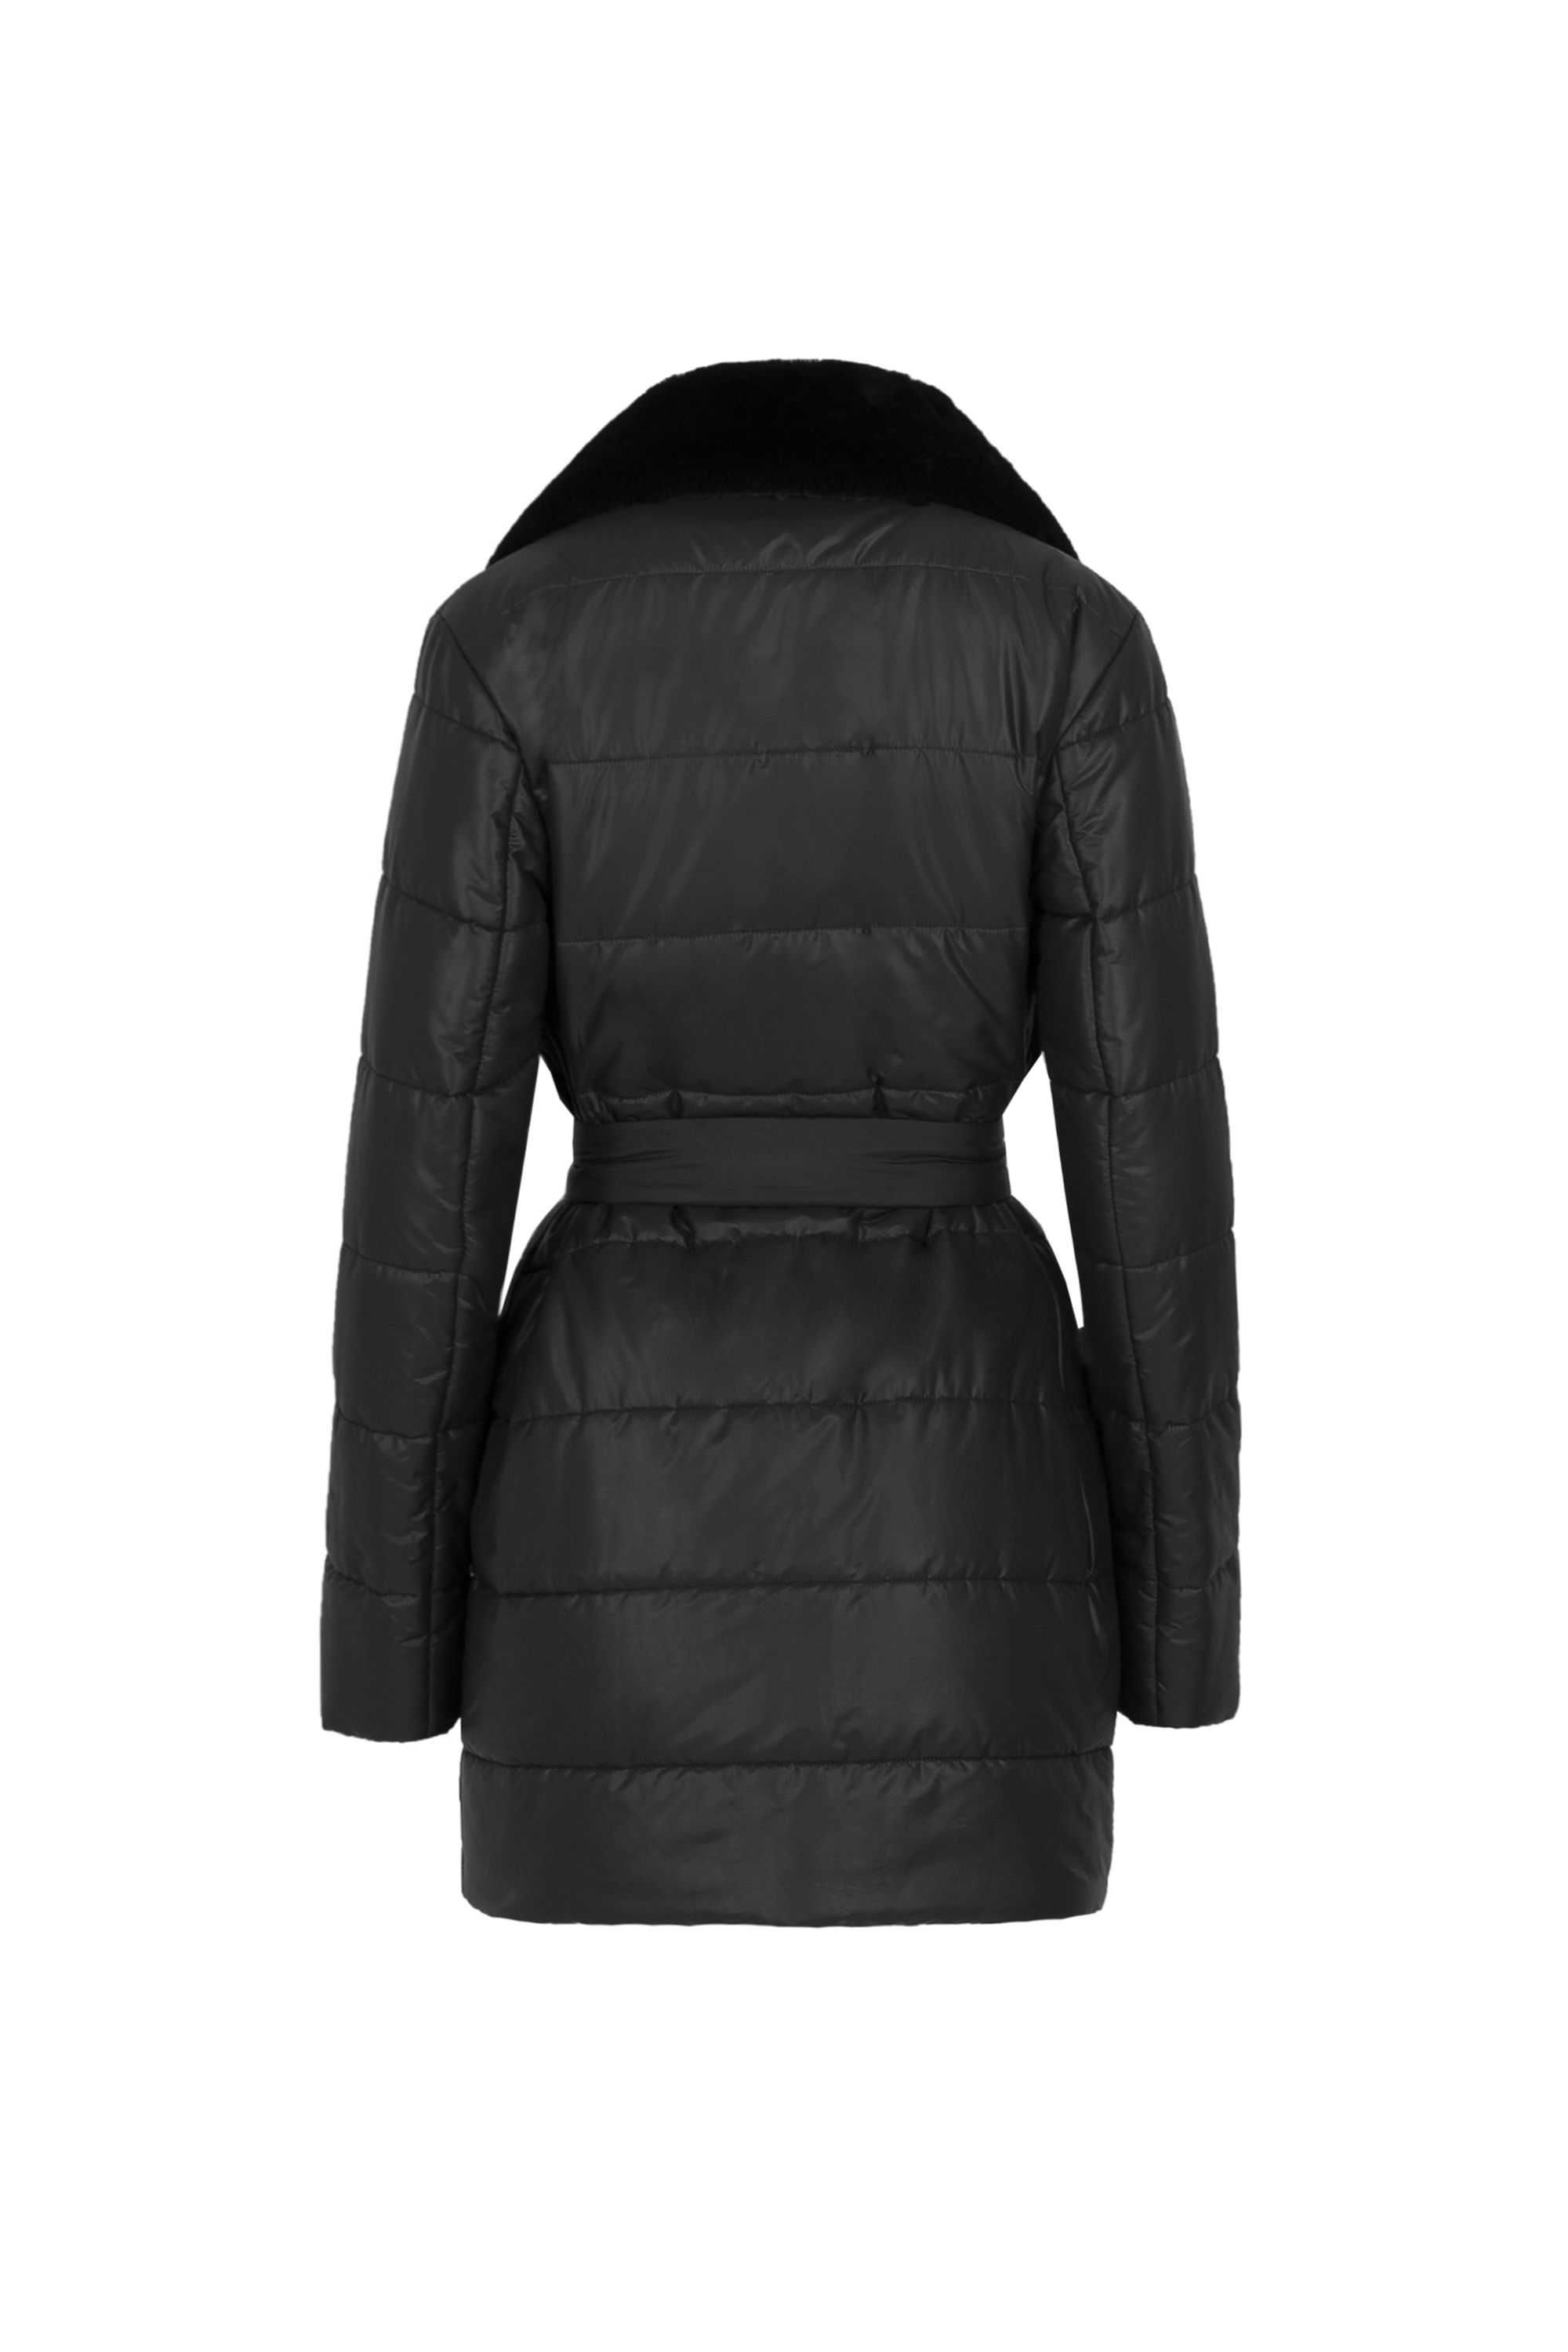 Пальто женское плащевое утепленное 5S-13037-1